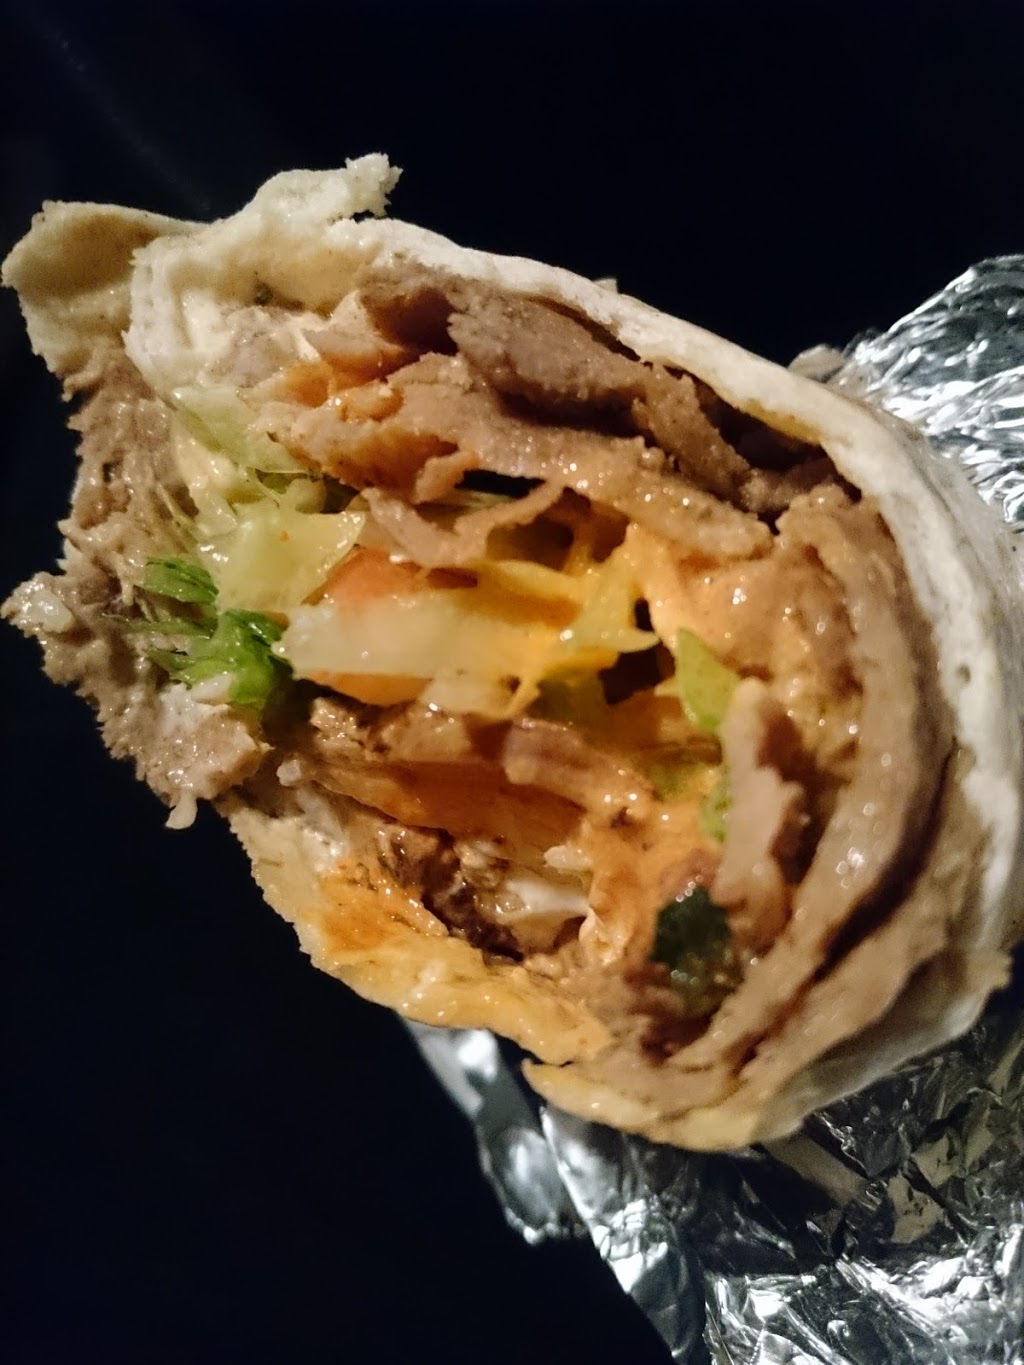 Oz Kebabs | meal takeaway | 30 Horne St, Sunbury VIC 3429, Australia